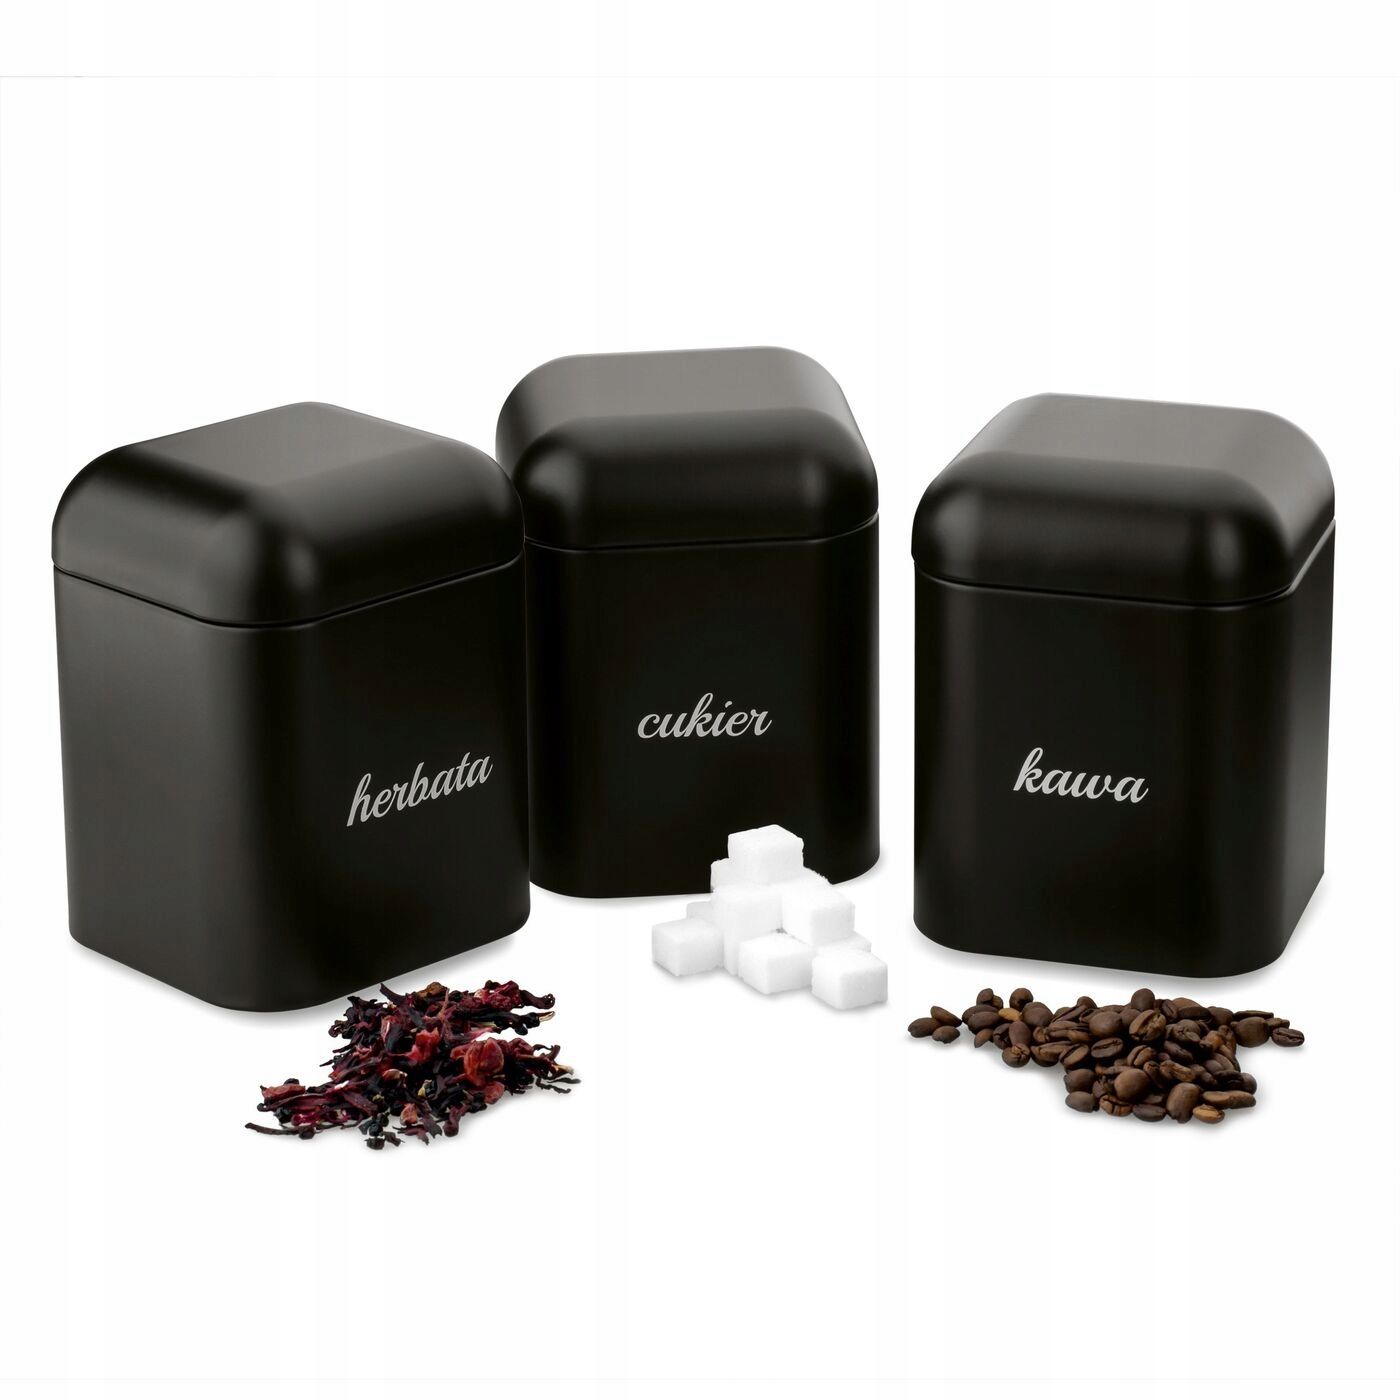 Zestaw 3 Pojemników Kawa Cukier Herbata Grava Czarne Starke Pro